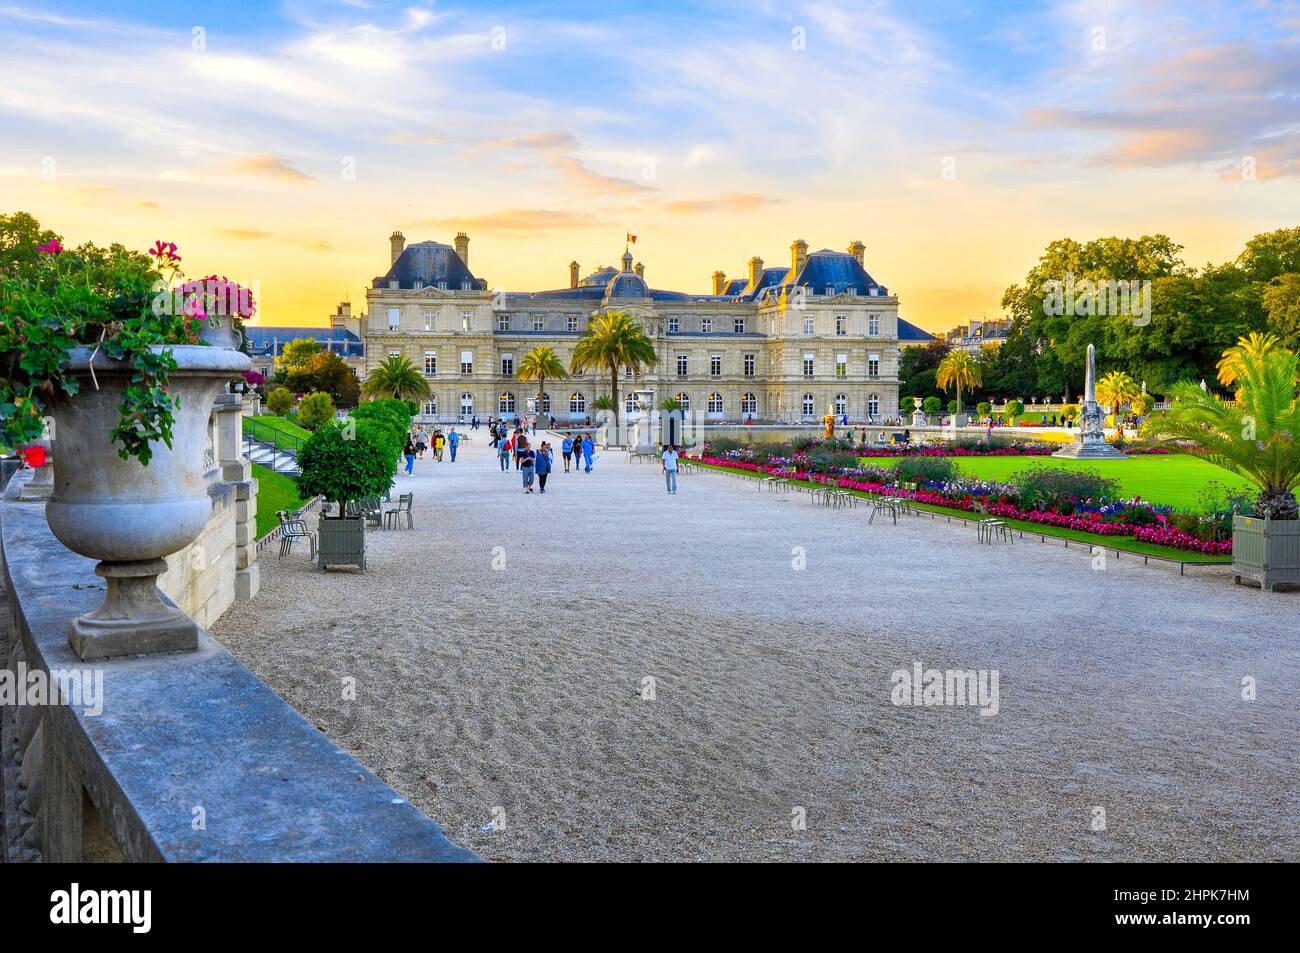 France, Versailles, 2017 - magnifique château de Versailles au coucher du soleil Banque D'Images